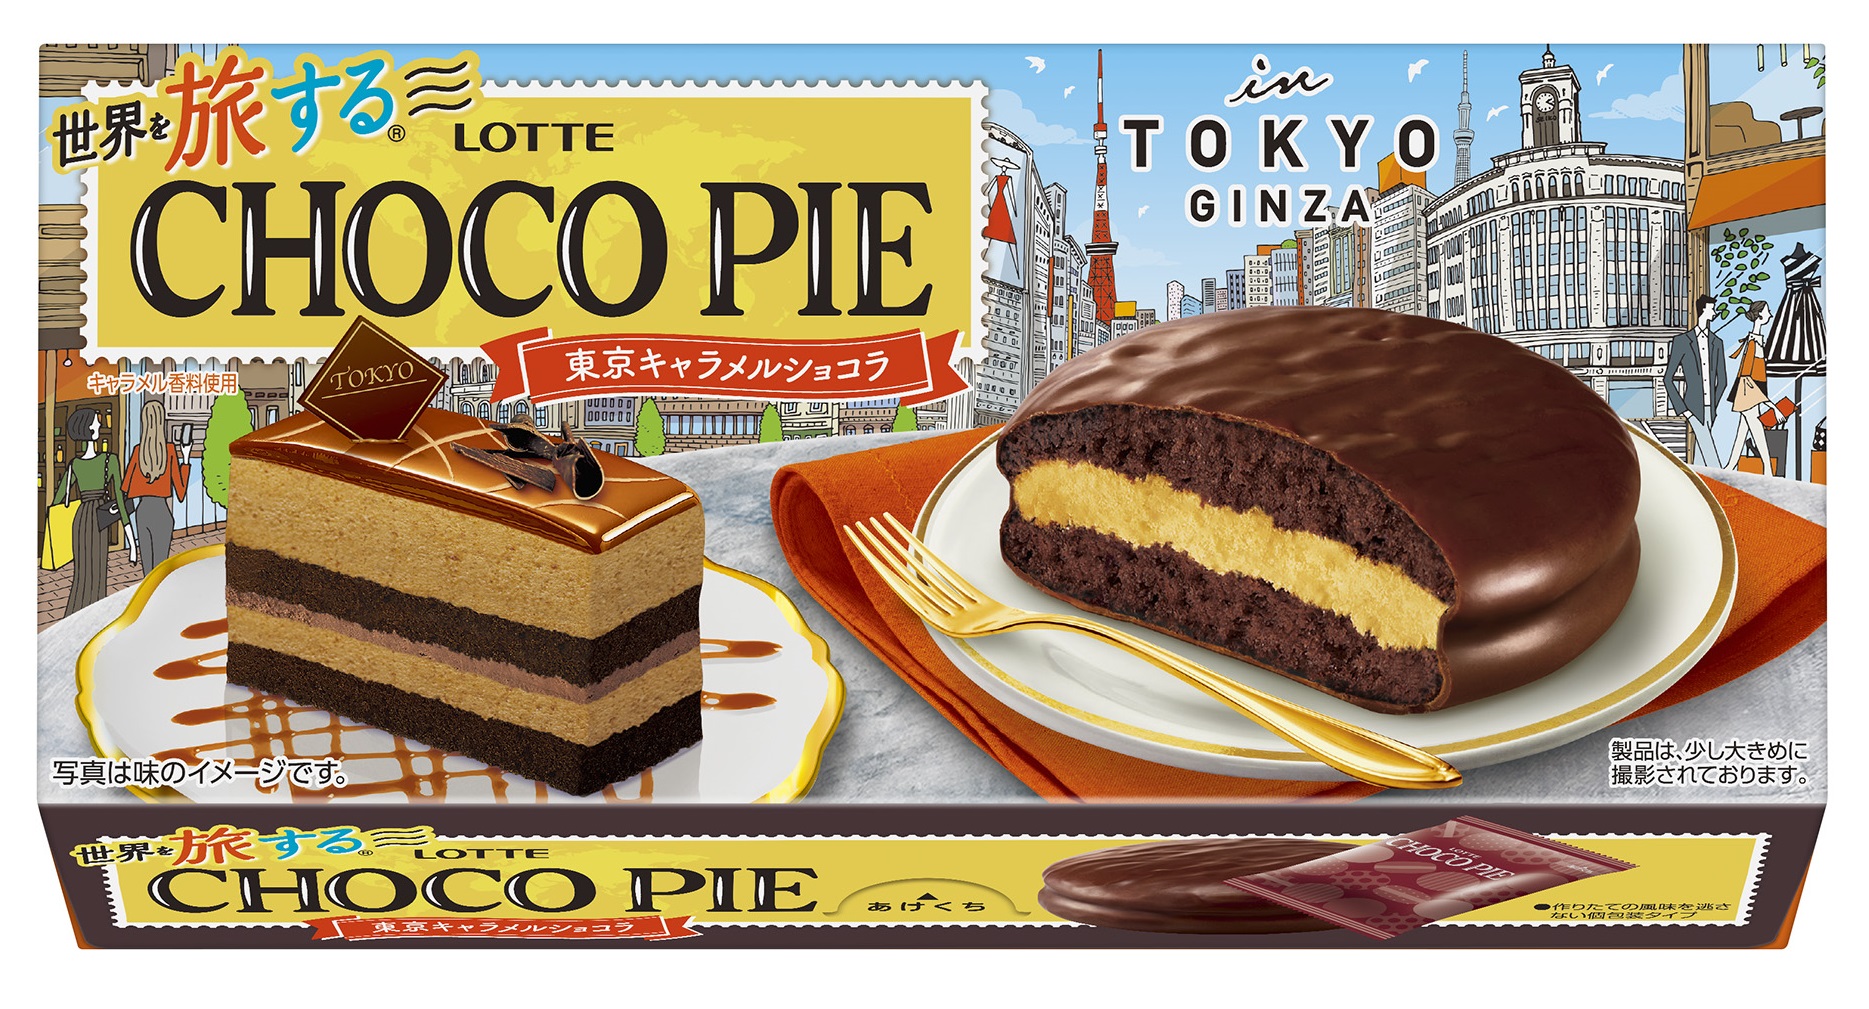 世界を旅する®チョコパイのファイナルとなる第4弾は東京がテーマ✈️🌟まるで自分が旅をしているかのような 「ワクワクする疑似体験」を🌸🌸